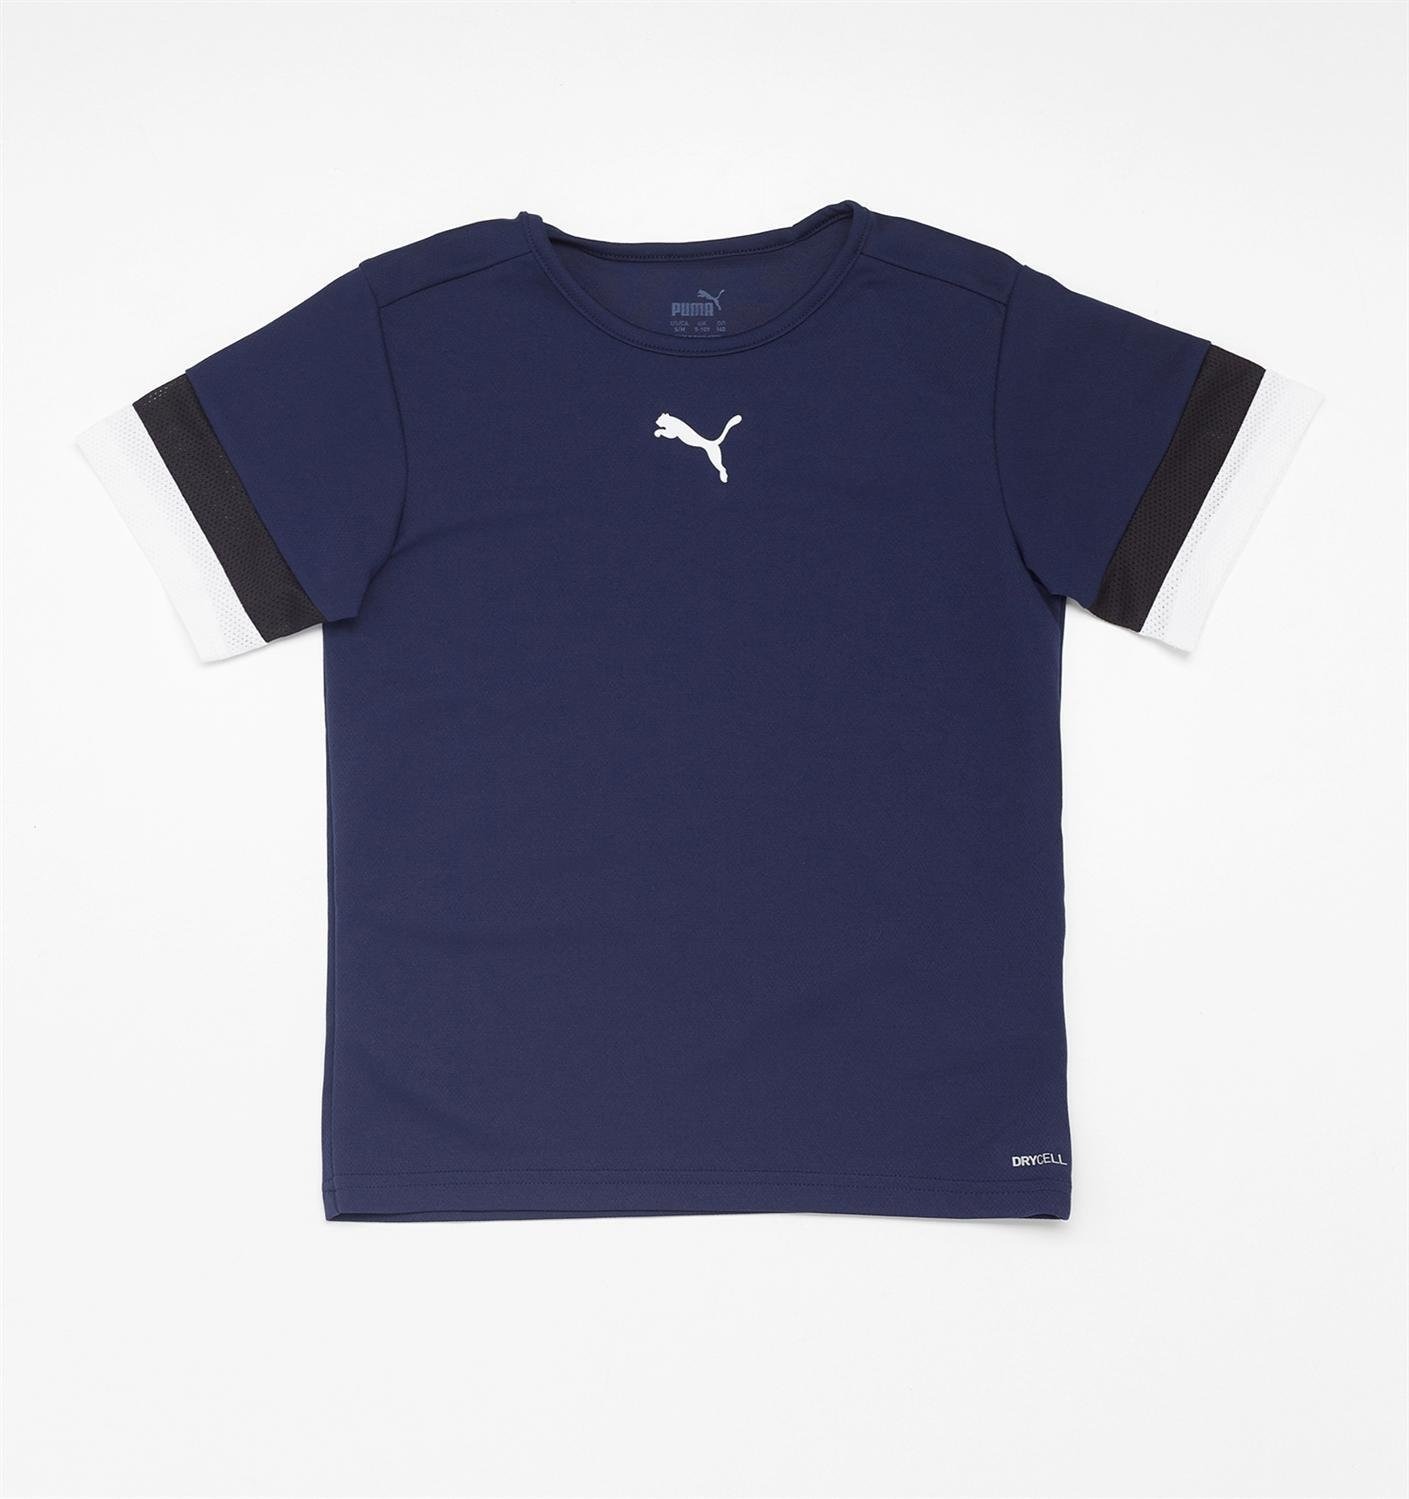 Puma Puma teamrise voetbalshirt blauw/wit kinderen kinderen